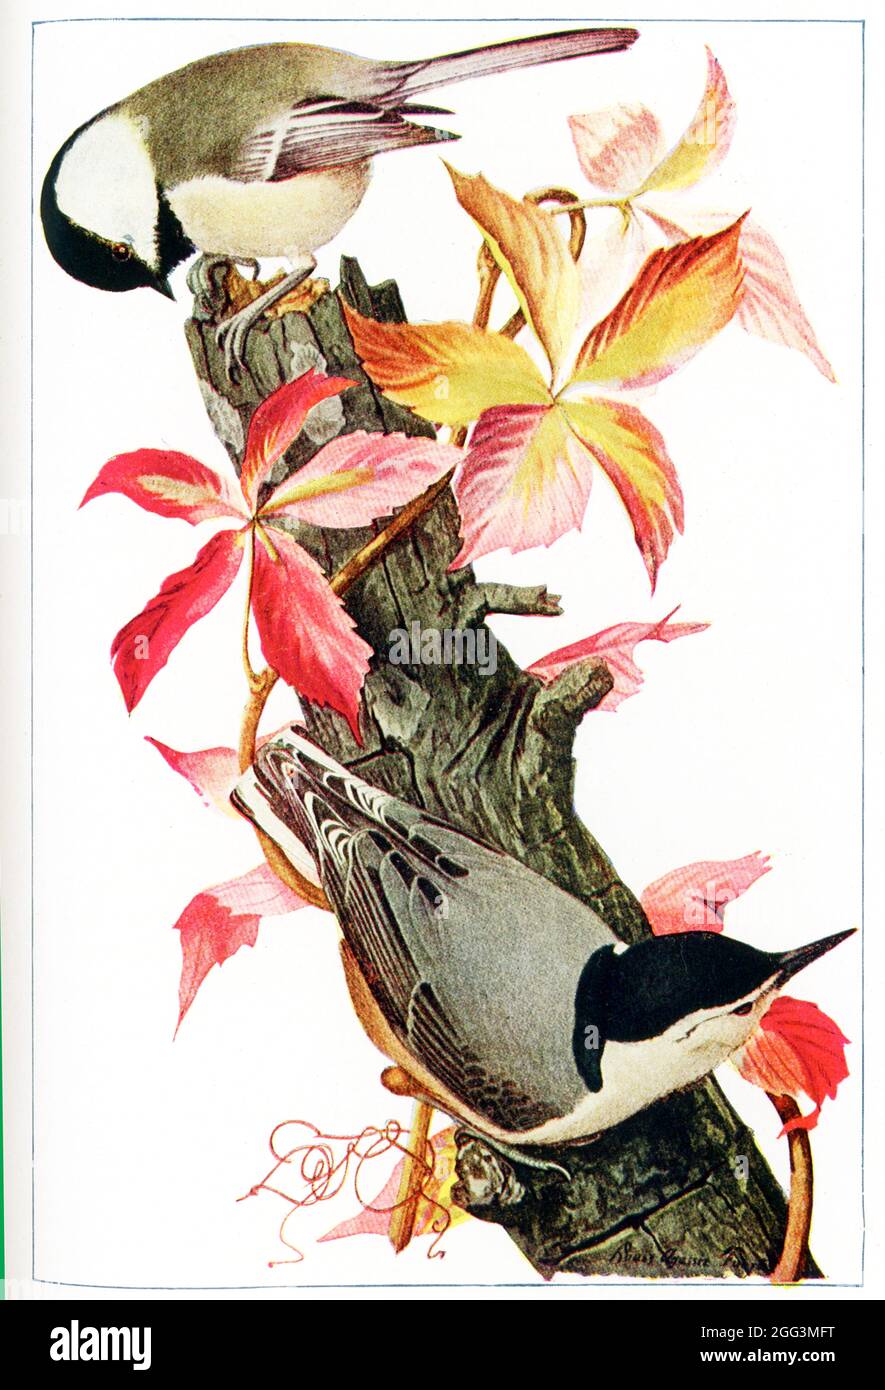 Diese Abbildung aus dem Jahr 1917 zeigt einen Windhauch und einen weißreihigen Nuthatch. Die Zeichnung ist von Louis Agassiz Fuertes (1874-1927), einem amerikanischen Ornithologen, Illustrator und Künstler, der die strengen und aktuellen Standards für ornithologische Kunst und naturalistische Darstellung gesetzt hat. Er gilt als einer der produktivsten amerikanischen Vogelkünstler, an zweiter Stelle nach seinem leitenden professionellen Vorgänger John James Audubon. Stockfoto